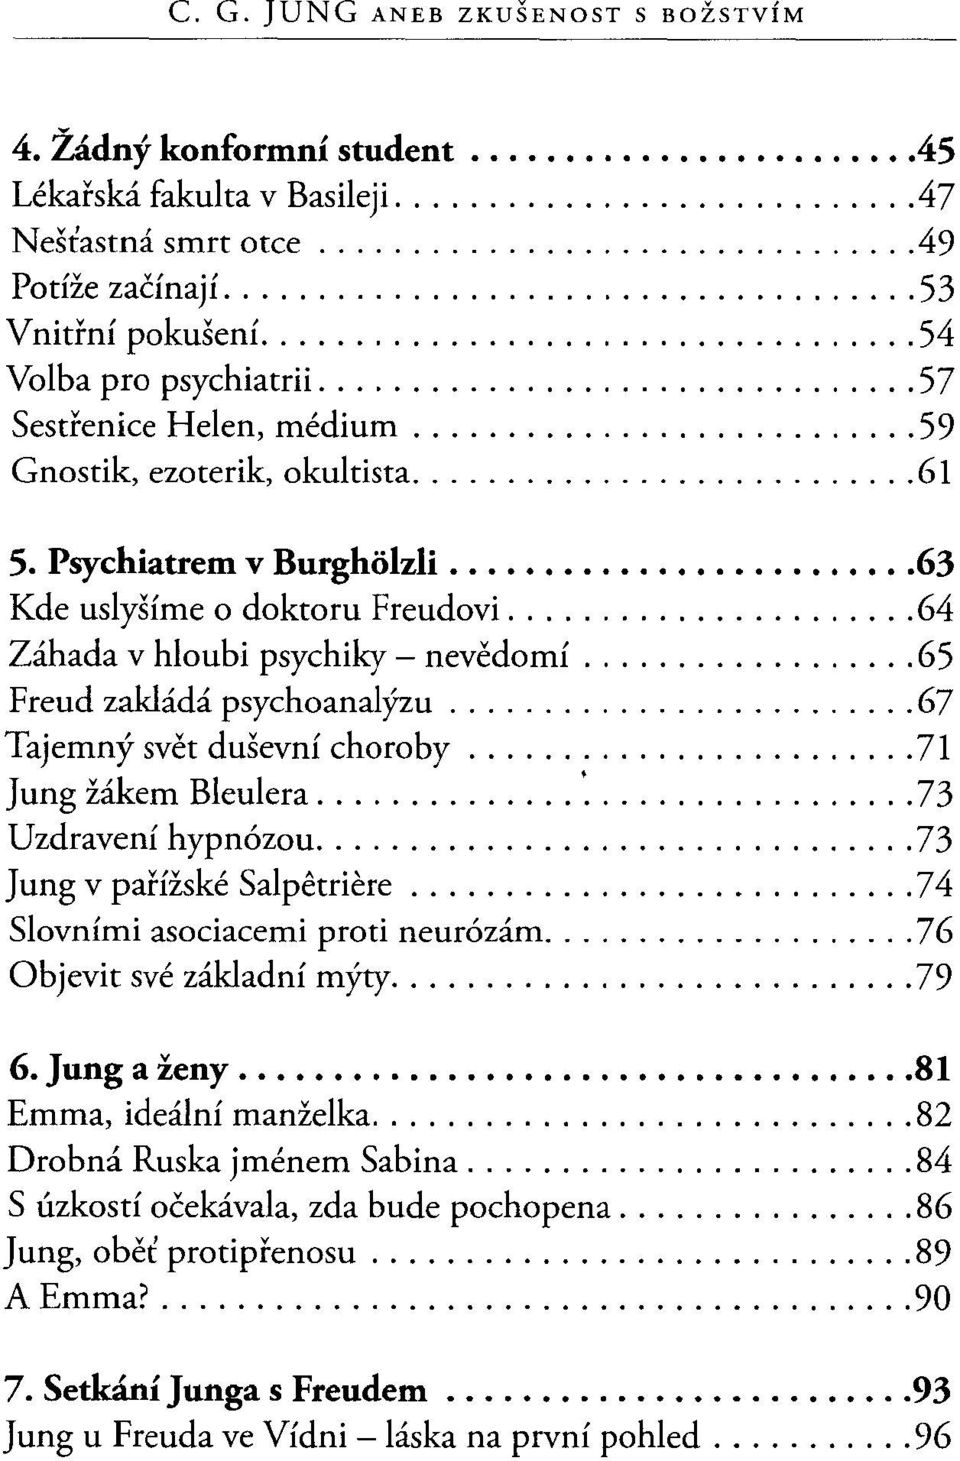 .. 65 Freud zakládá psychoanalýzu... 67 Tajemný svět duševní choroby... 71 Jung žákem Bleulera... '... 73 Uzdravení hypnózou... 73 V'v J ung v panzs k' e S a I petnere '.,.